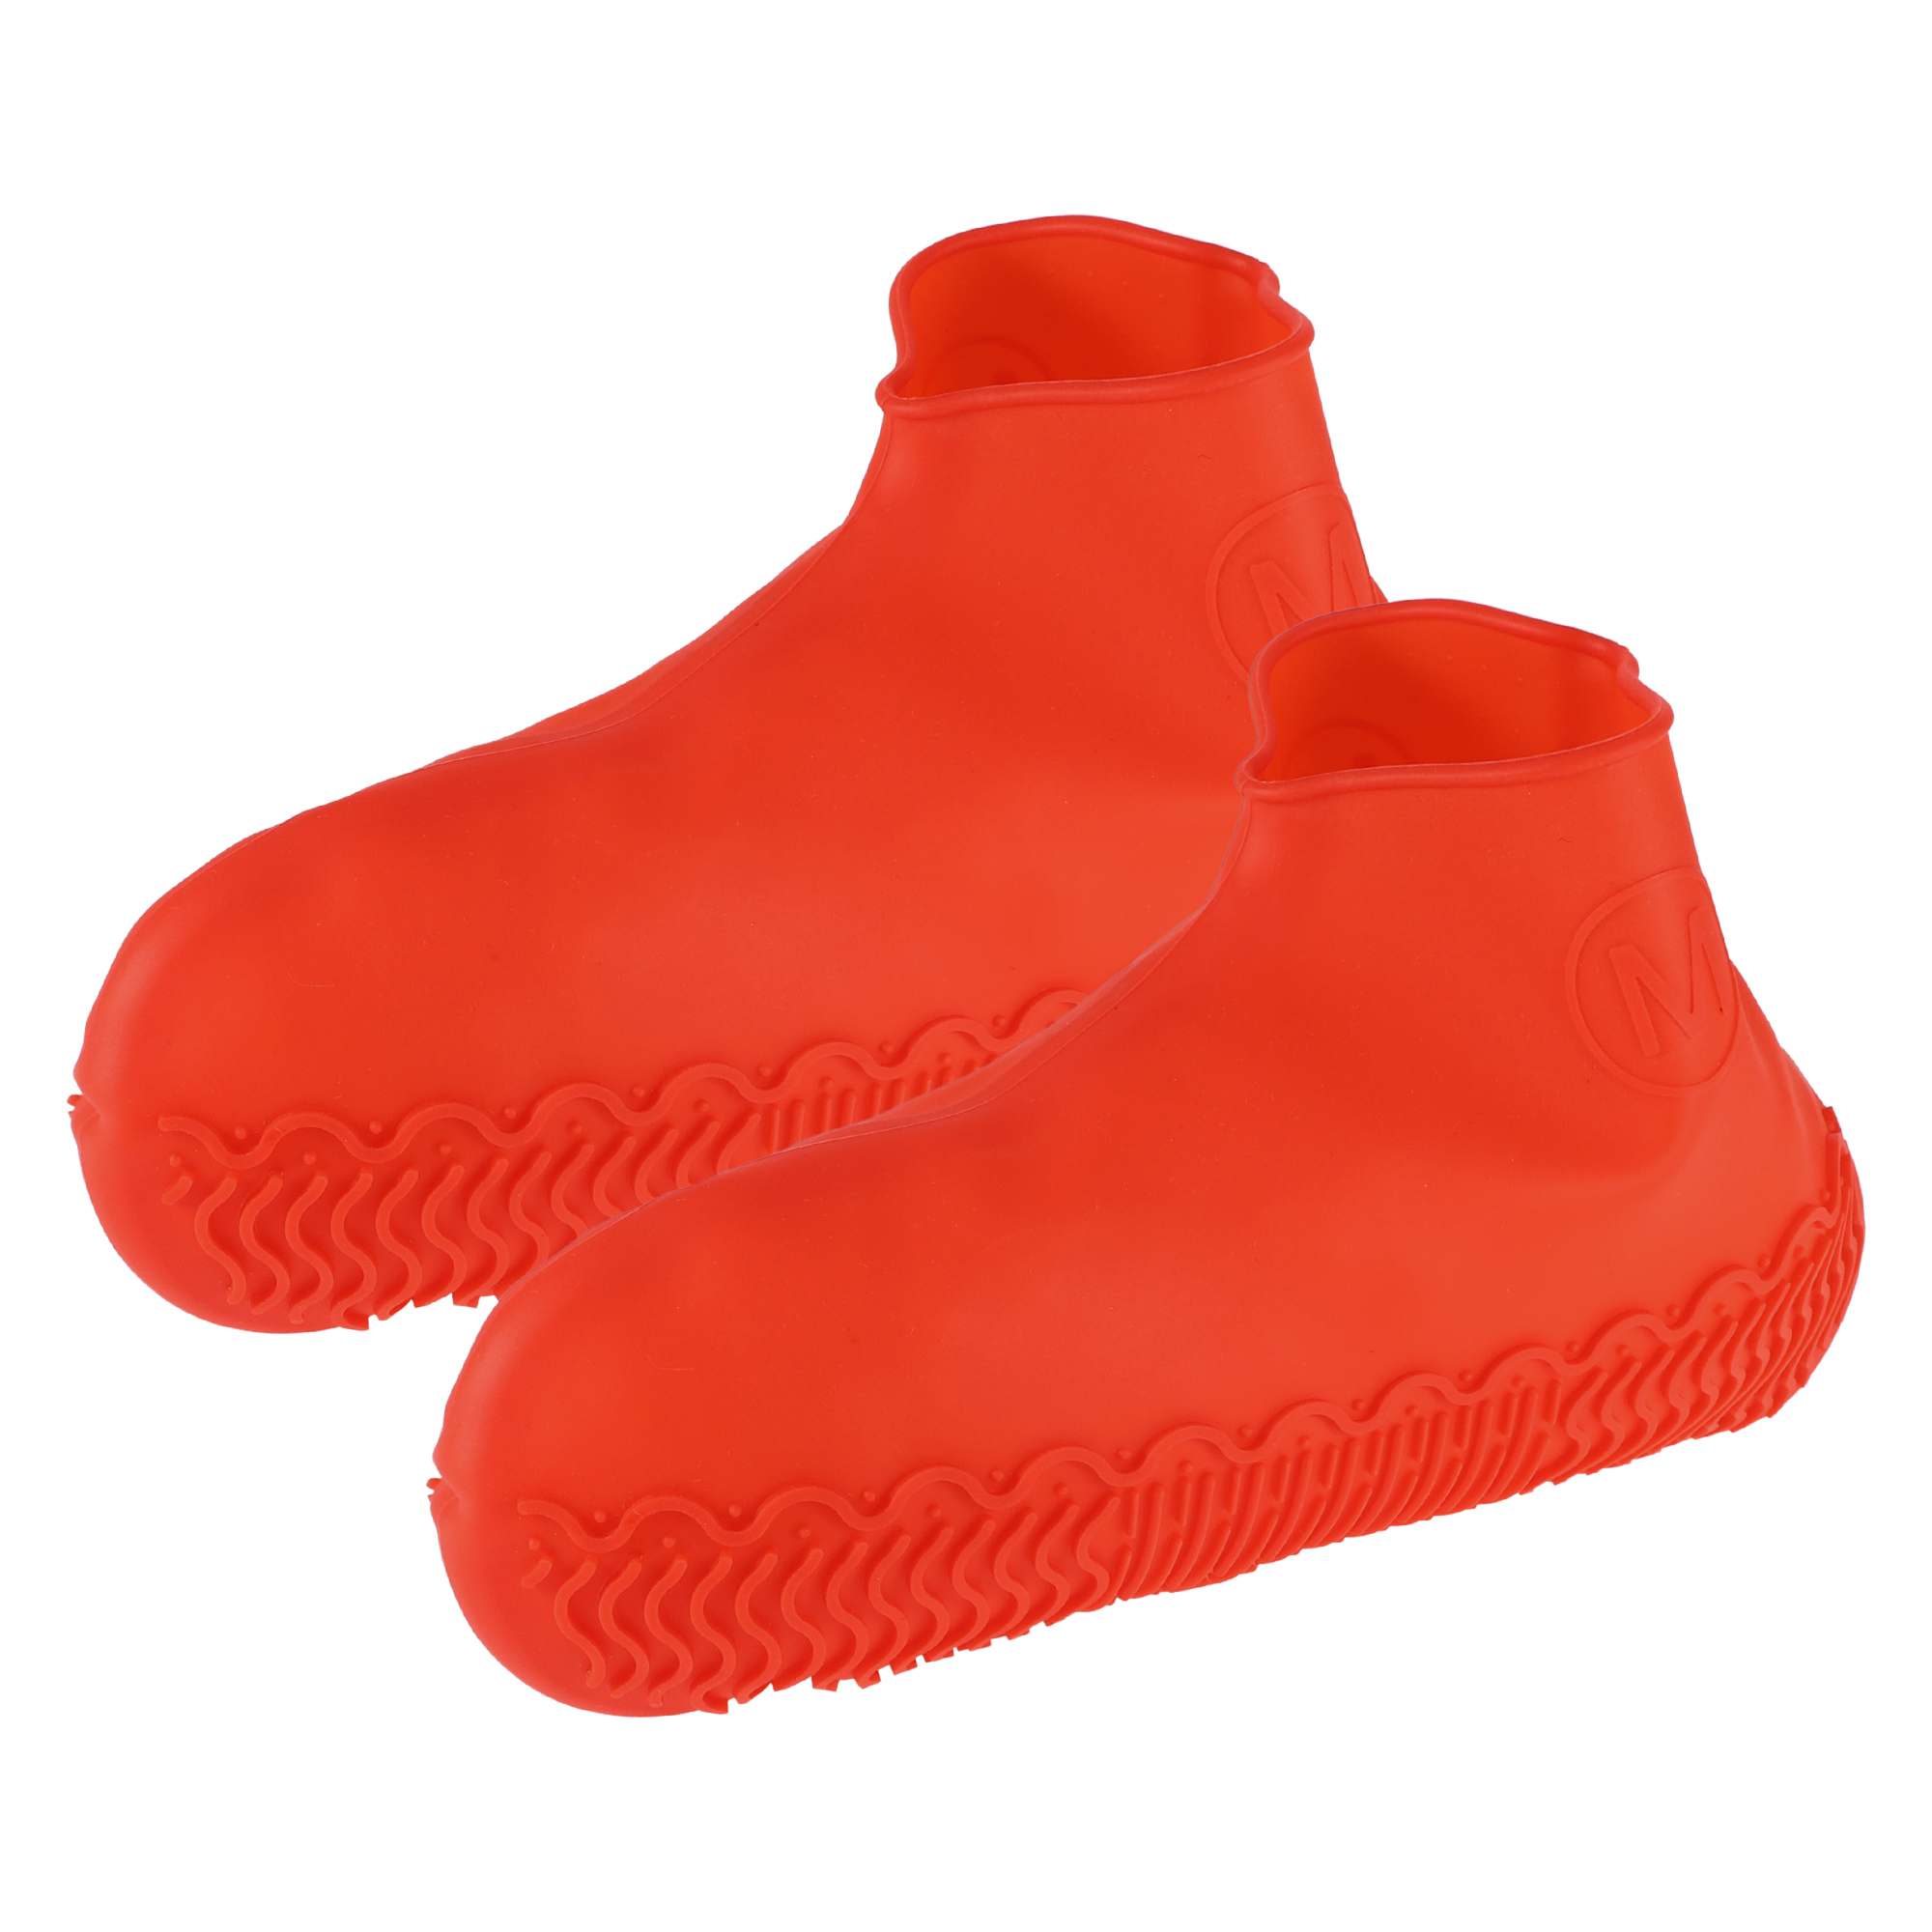 Unique Bargains 1 Pair Unisex Silicone Shoes Covers Rain Boots Non-Slip